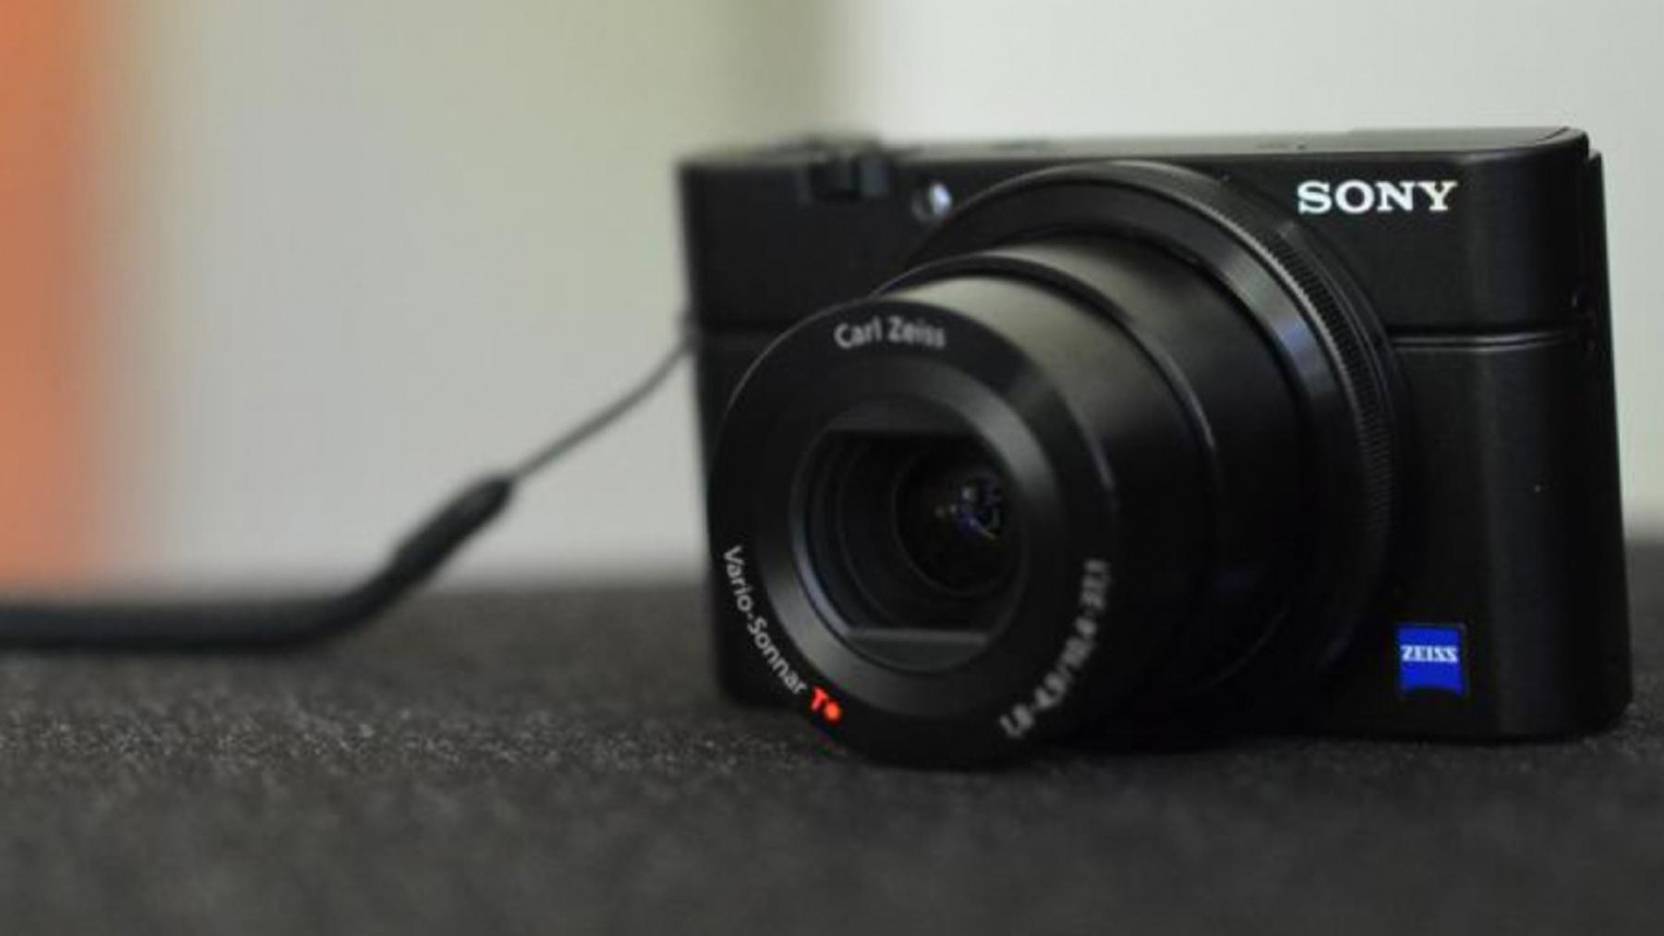 Digital kompaktkamera Guide (2020) - Find det rigtige kamera og tjek priser